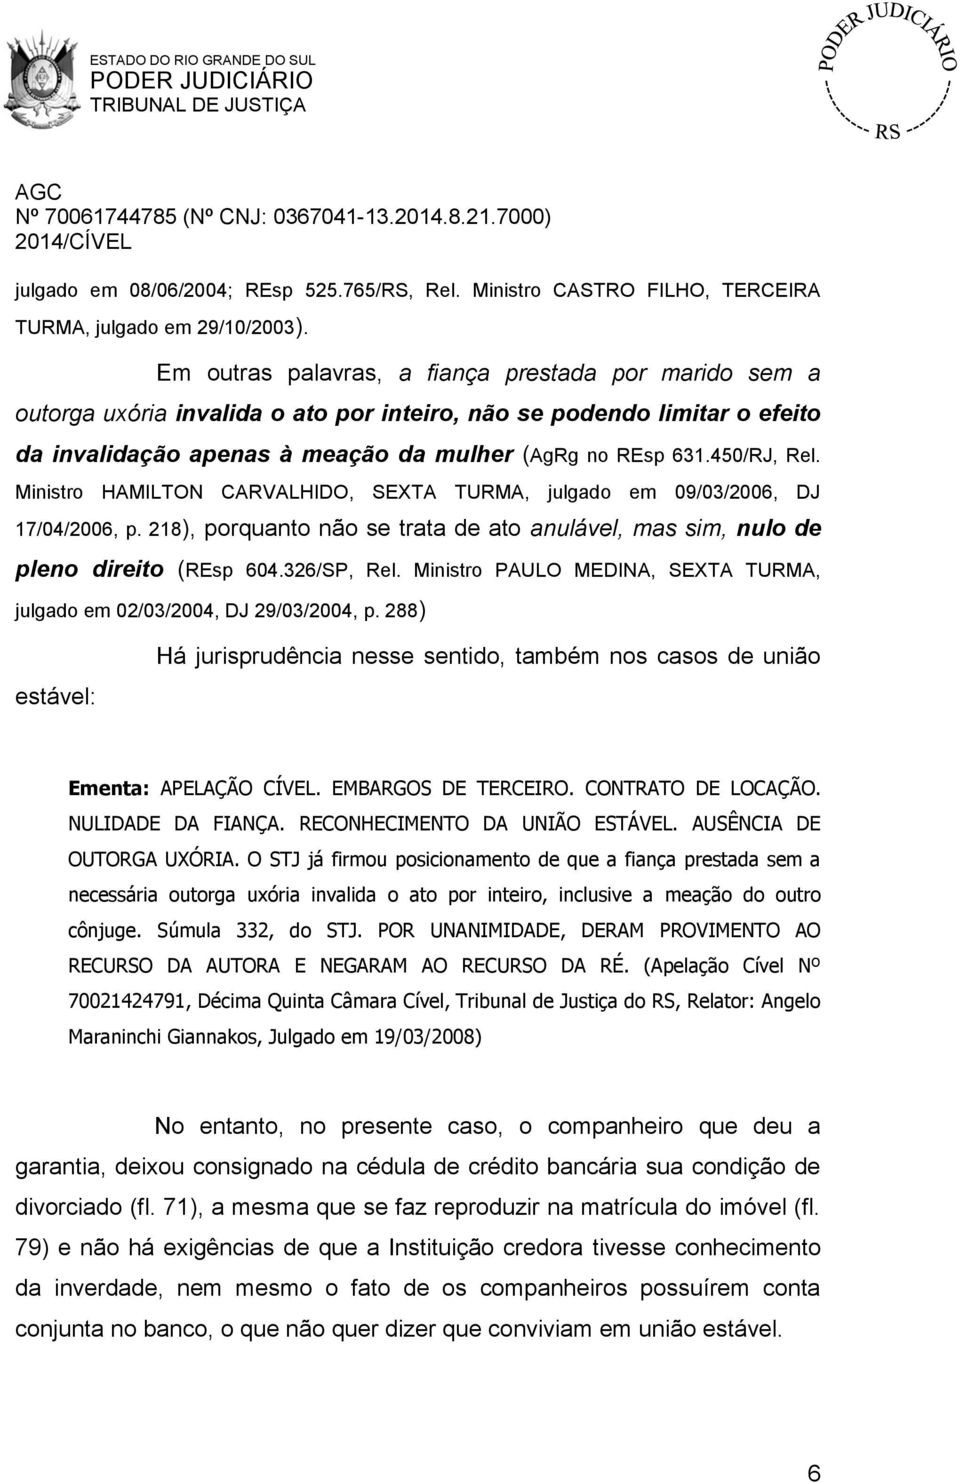 450/RJ, Rel. Ministro HAMILTON CARVALHIDO, SEXTA TURMA, julgado em 09/03/2006, DJ 17/04/2006, p. 218), porquanto não se trata de ato anulável, mas sim, nulo de pleno direito (REsp 604.326/SP, Rel.